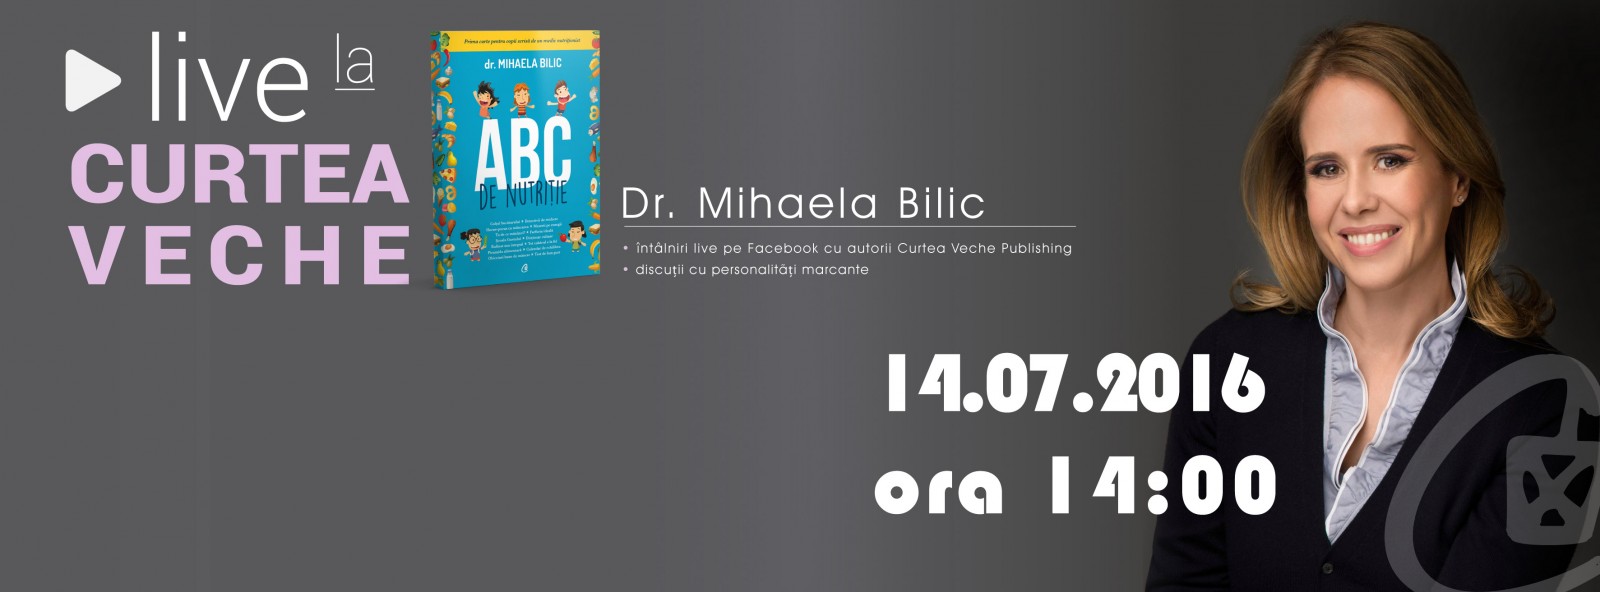 Mihaela Bilic lansează “ABC de nutriție”,  prima carte pentru copii scrisă de un medic nutriționist din România